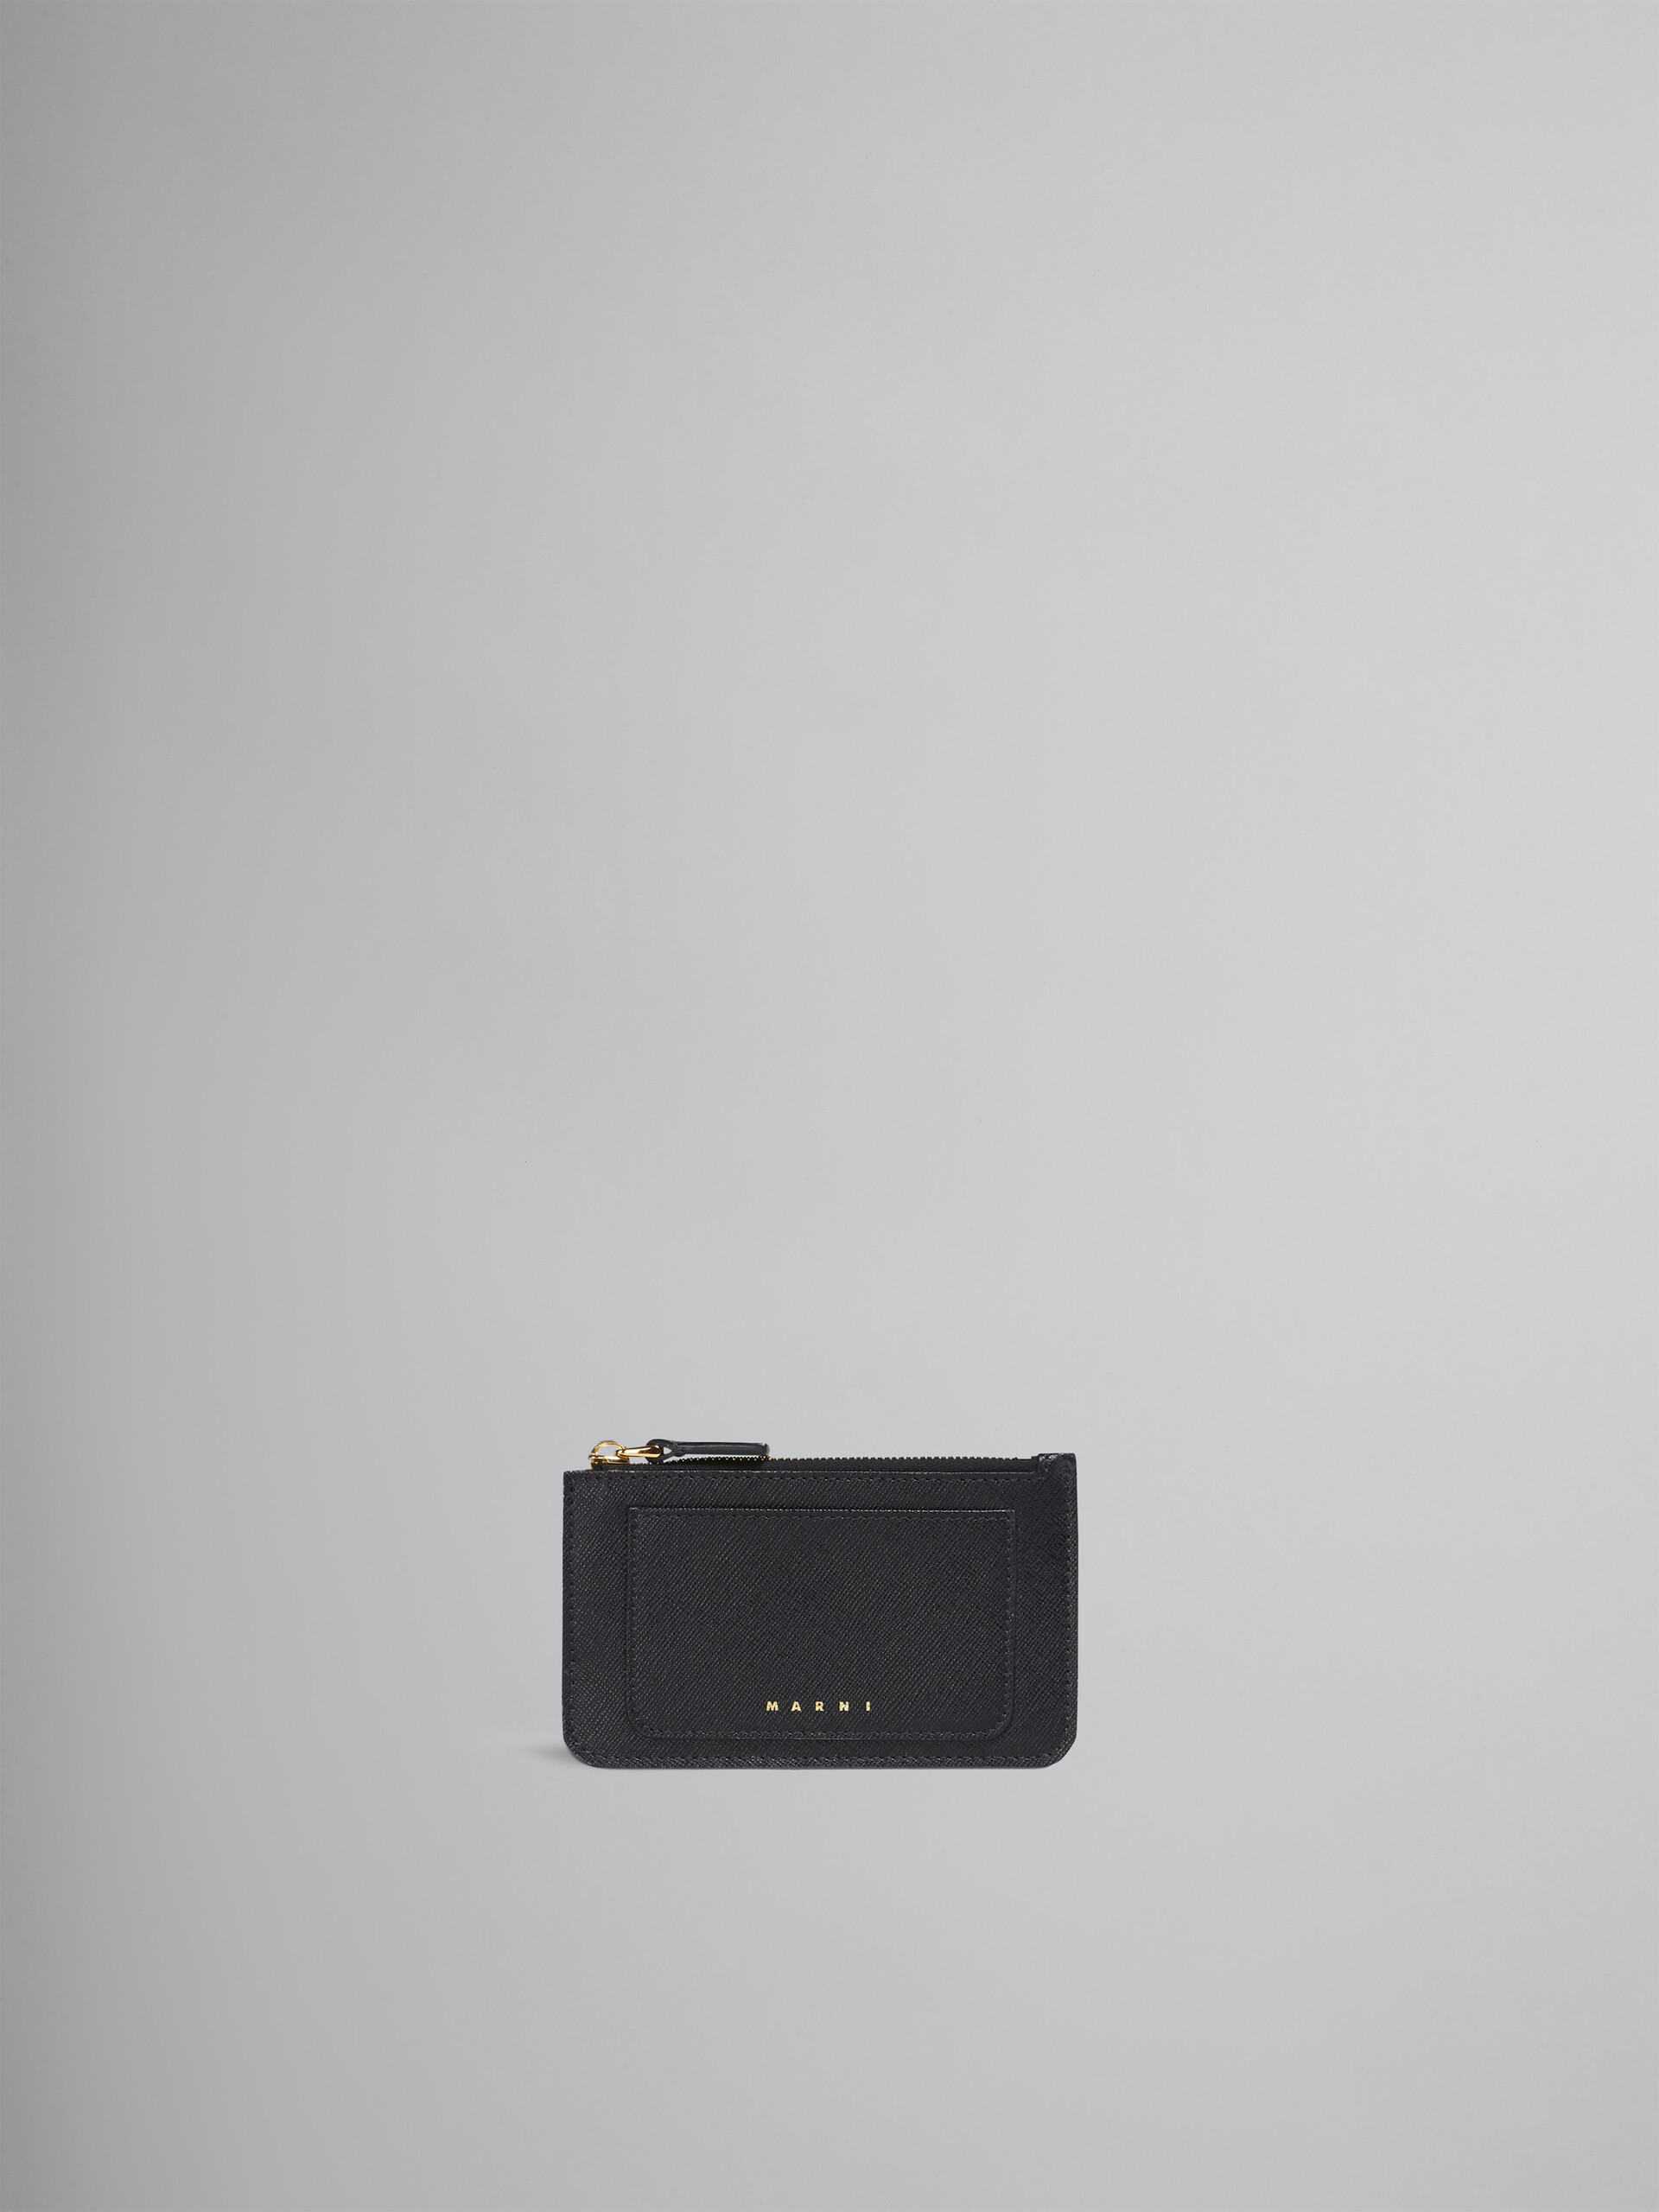 サフィアーノレザー製カードケース - 財布 - Image 1